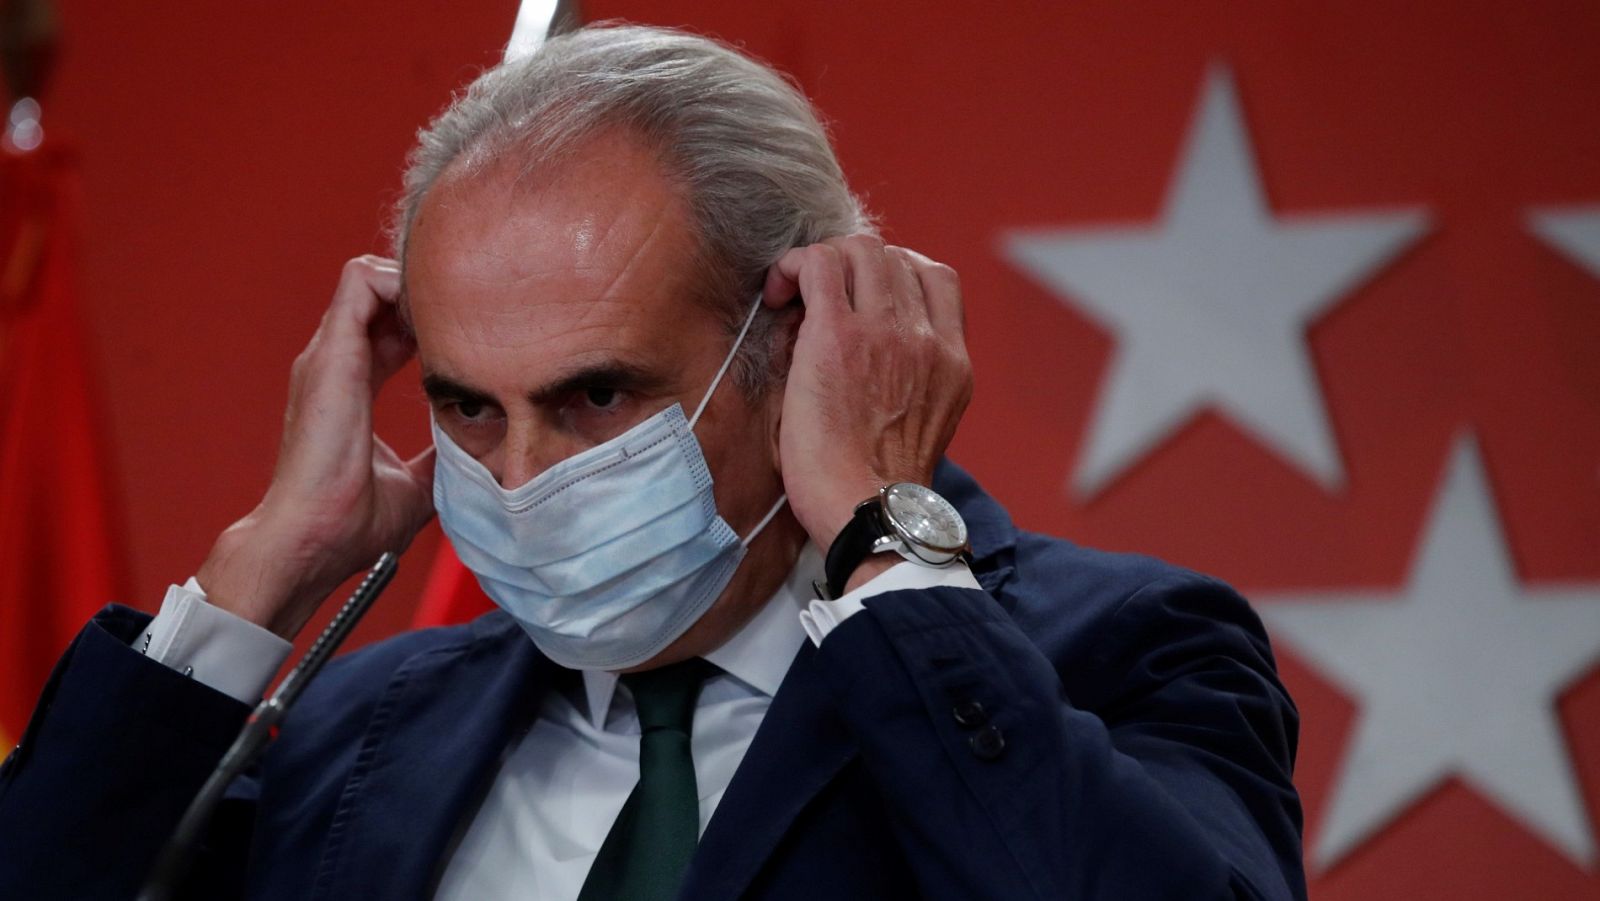 El consejero de Sanidad de Madrid afirma que el Gobierno ha hecho un "chantaje" con el estado de alarma